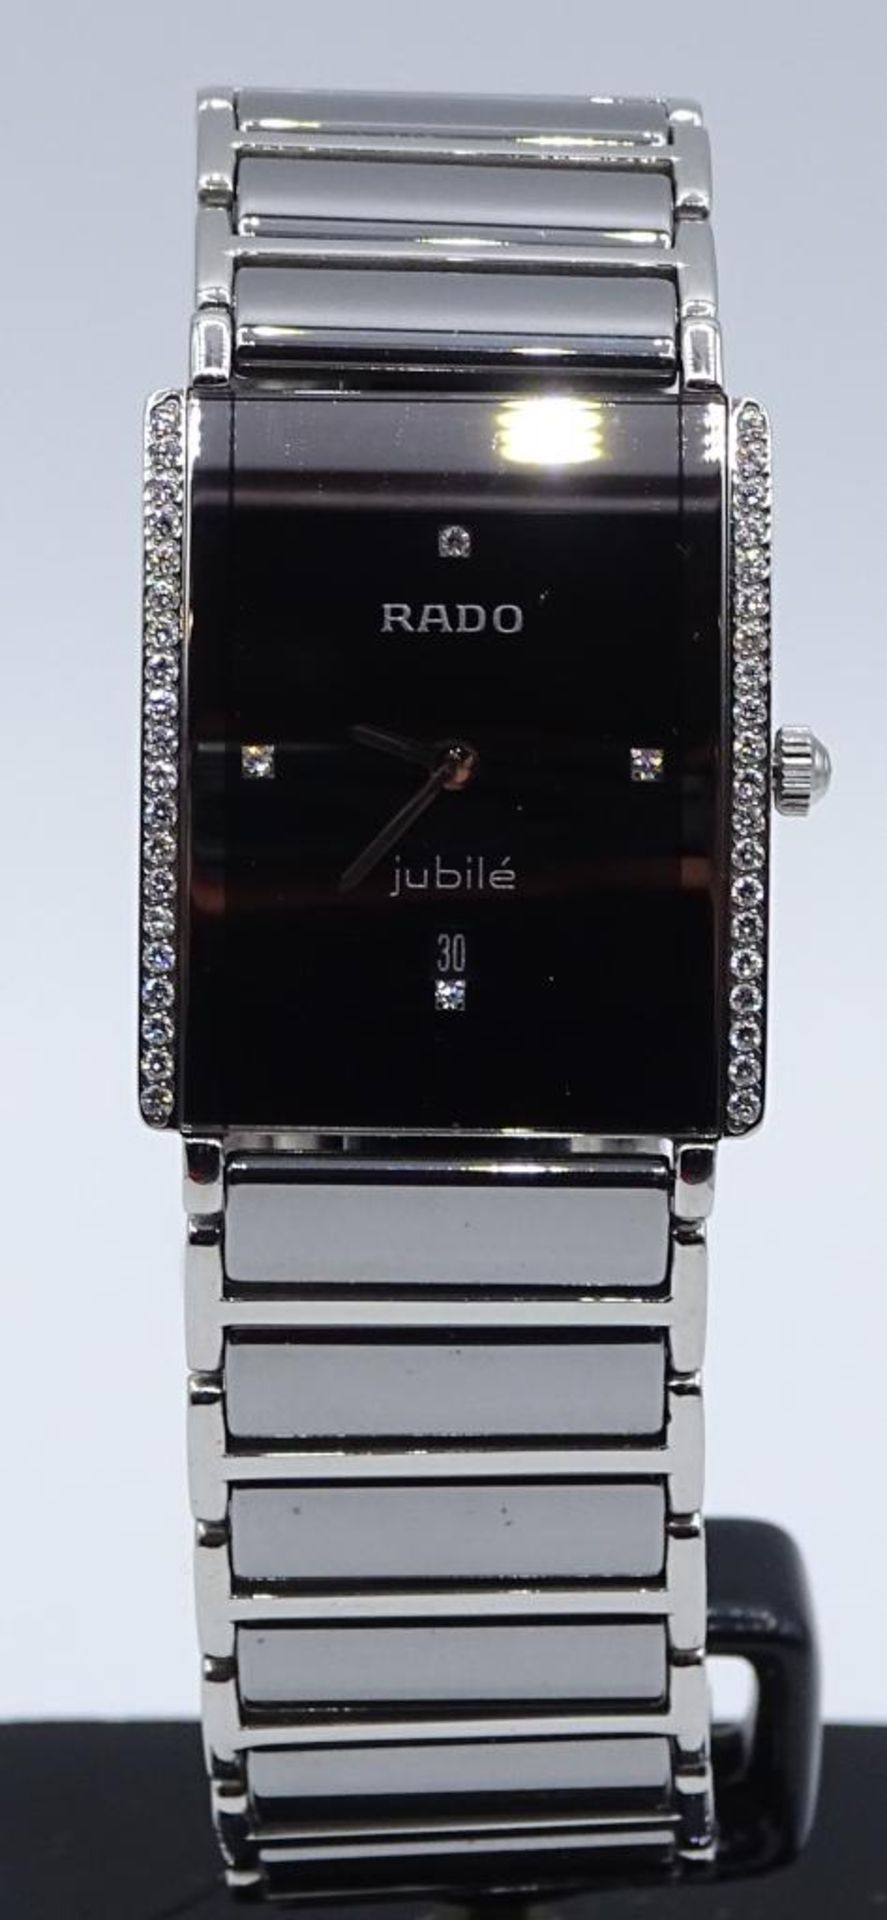 DAU "RADO-JUBILÈ",Keramik-Titianium,seitlich Diamanten,(44 Stück)ca.0,2ct.,,Quartz,läuft,guter Zust- - Bild 2 aus 9